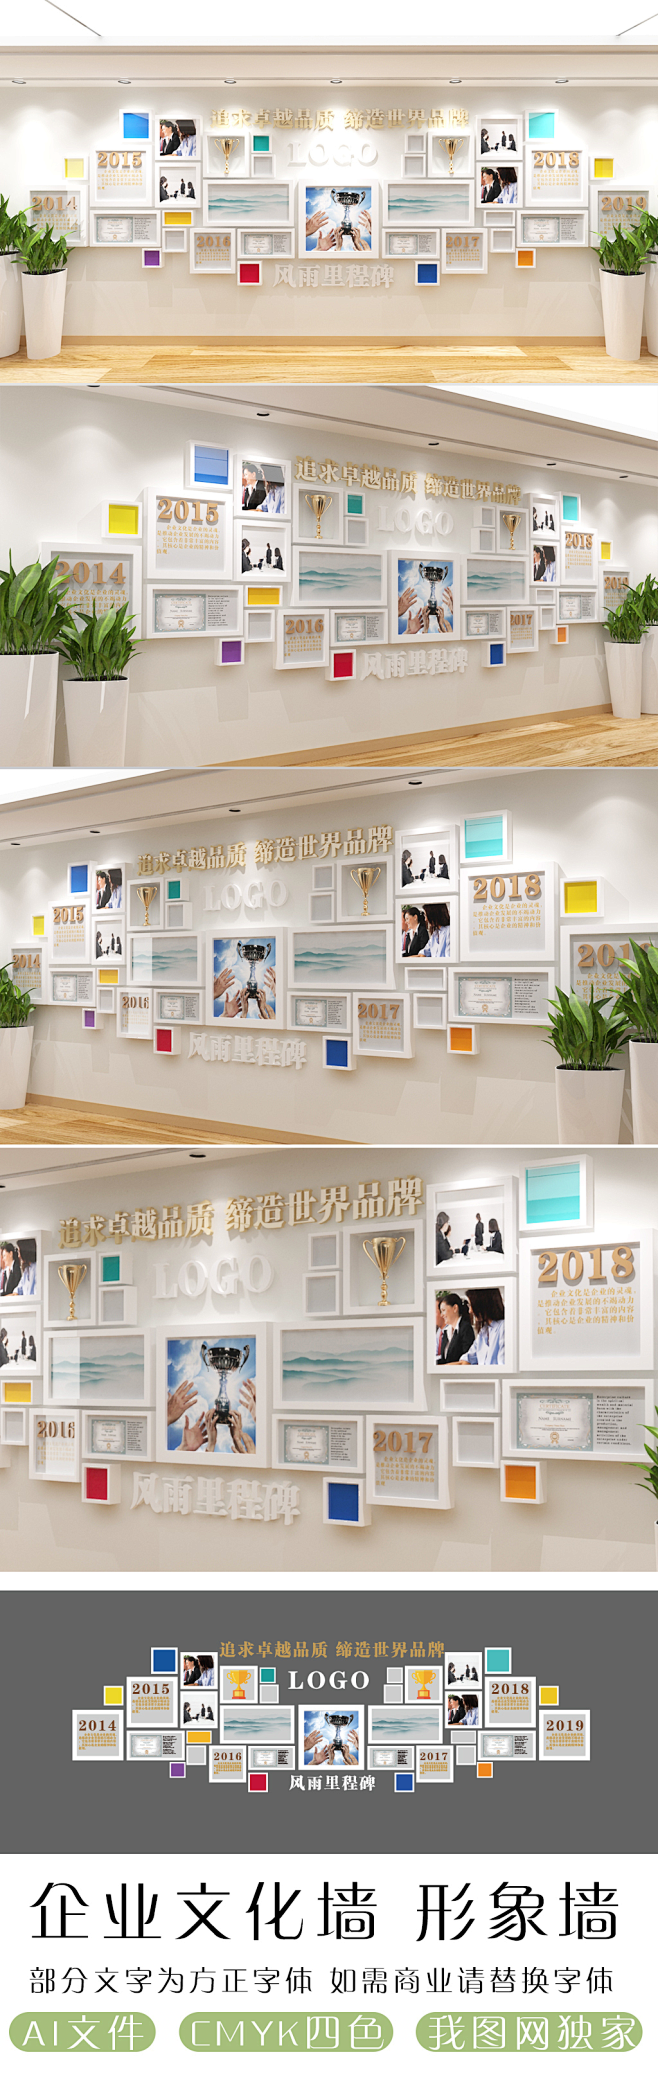 照片墙公司员工风采立体团队社区走廊长廊办公室励志创意主题单位模板